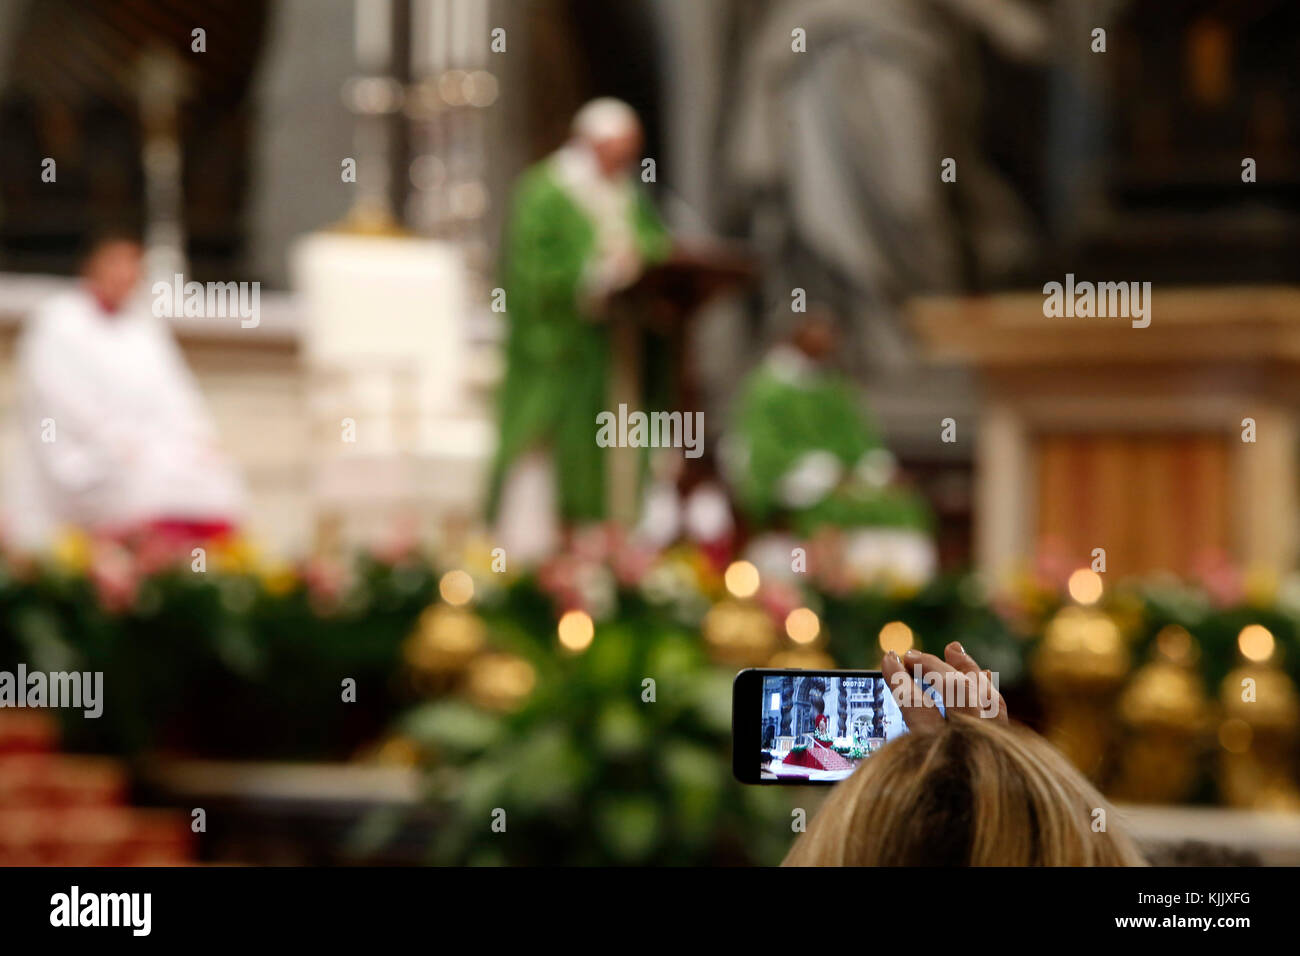 Le pape François célèbre la messe dans la basilique Saint Pierre, Rome. L'Italie. Banque D'Images